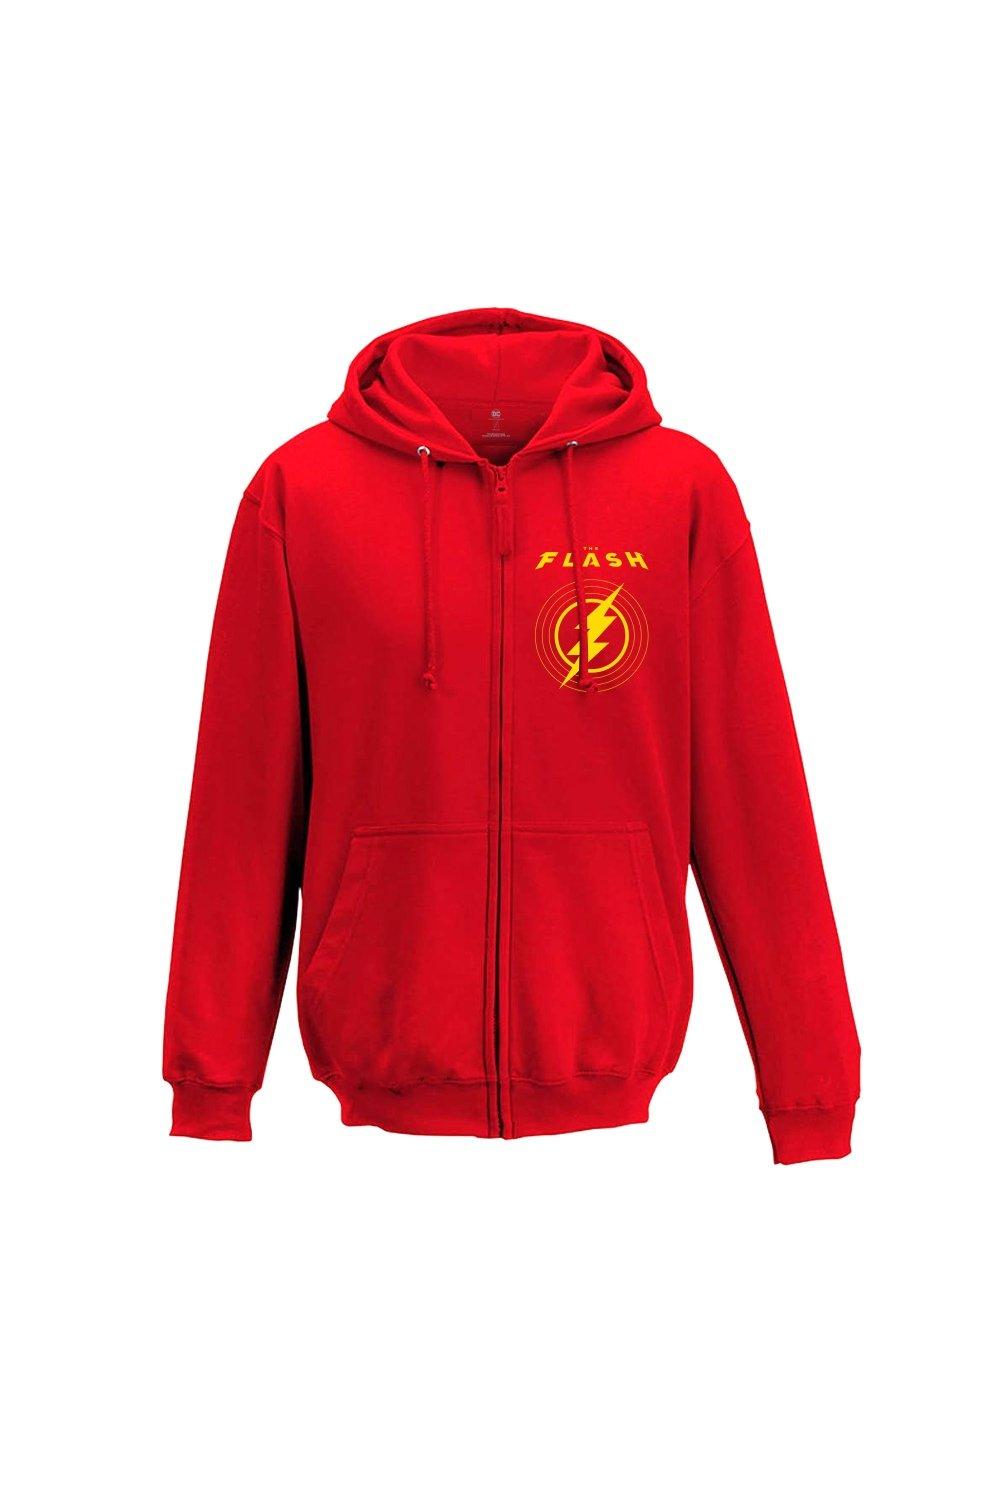 Hoodies & Sweatshirts | Zip Hoodie Long Sleeve OTH | The Flash